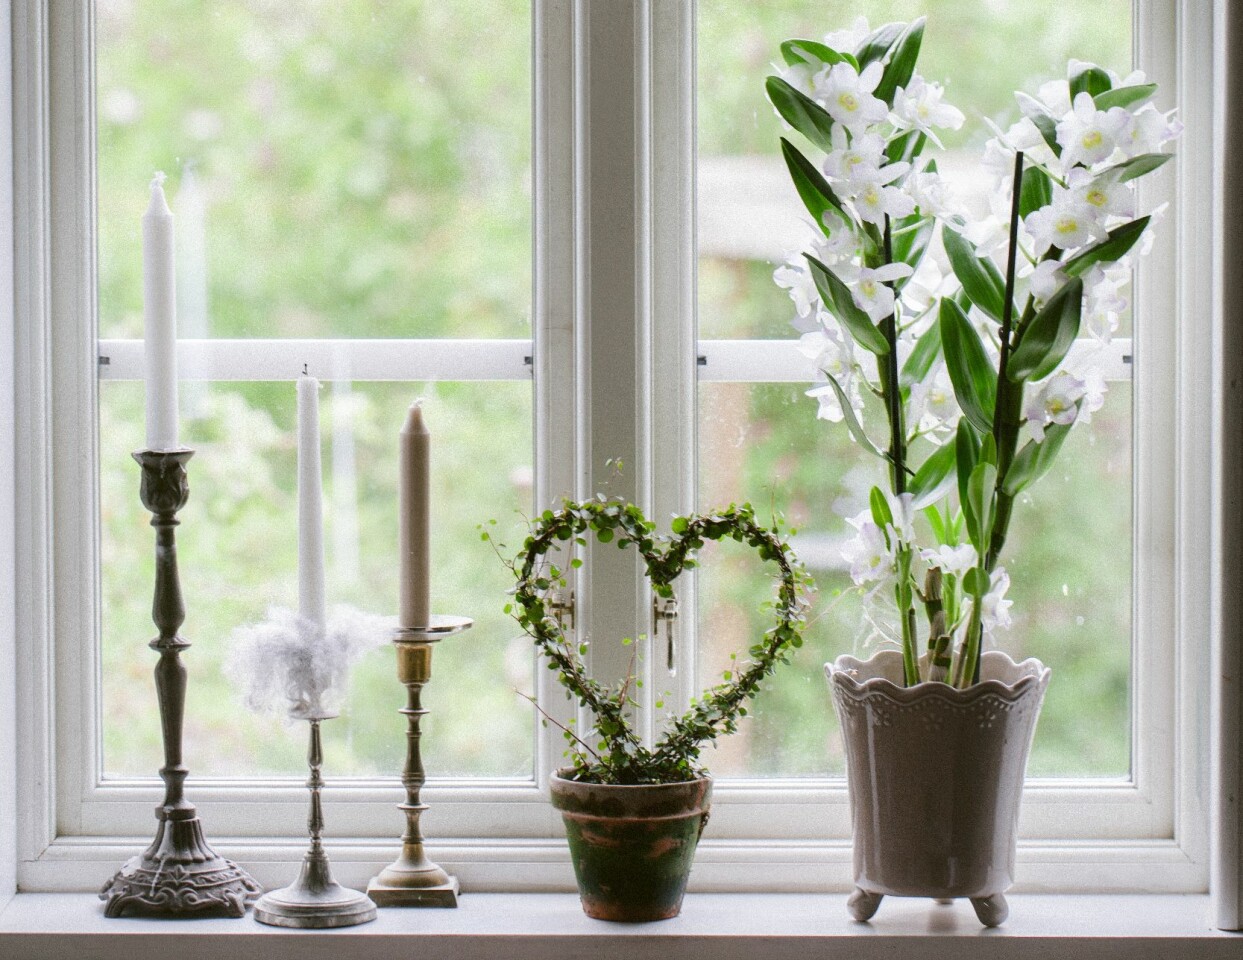 Vit orkidé i fönsterkarm tillsammans med ljus och slingeranka på båge.